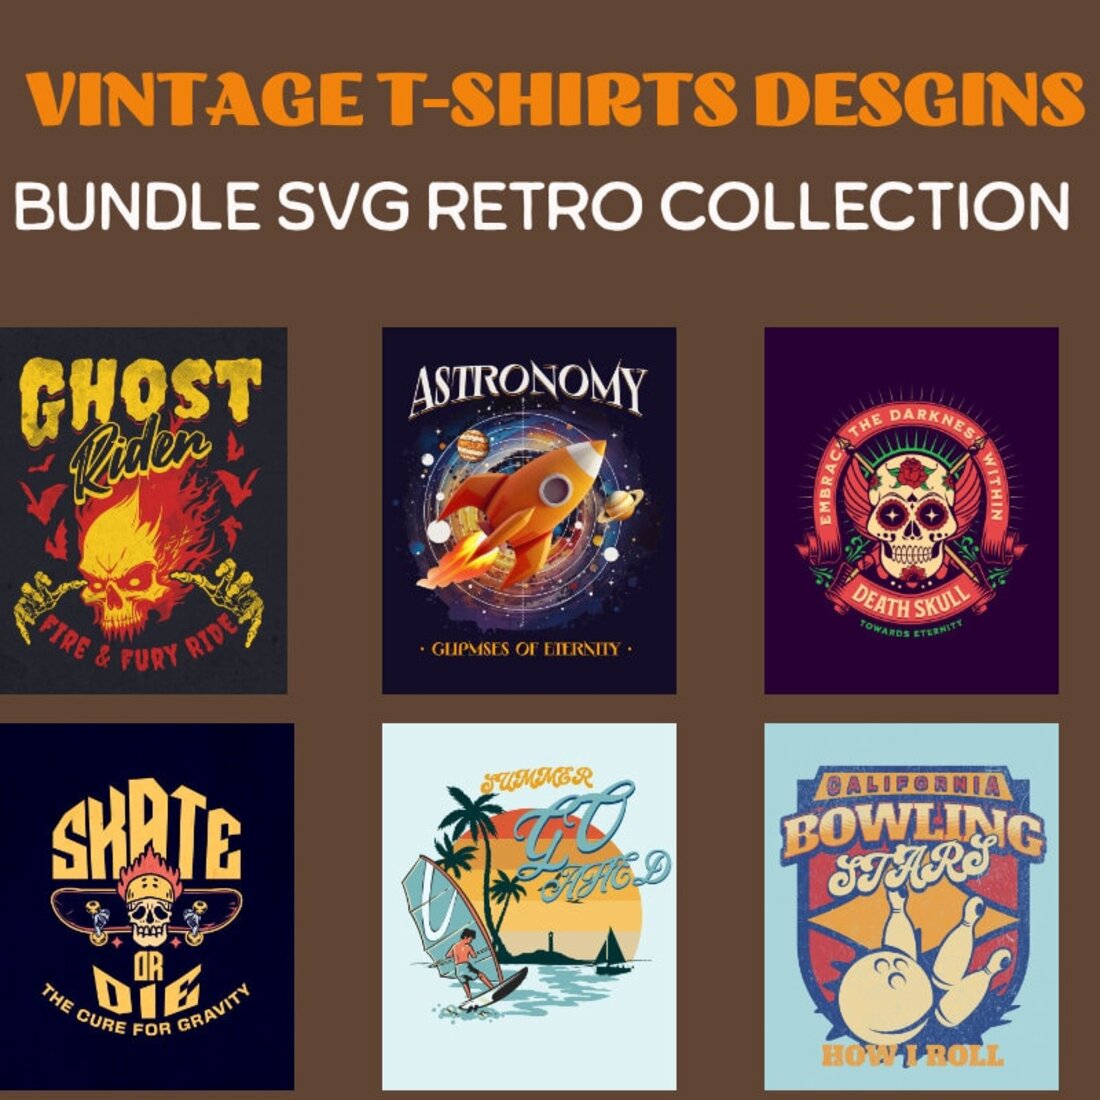 12 Vintage T-Shirt Design Bundle SVG Retro Collection preview image.